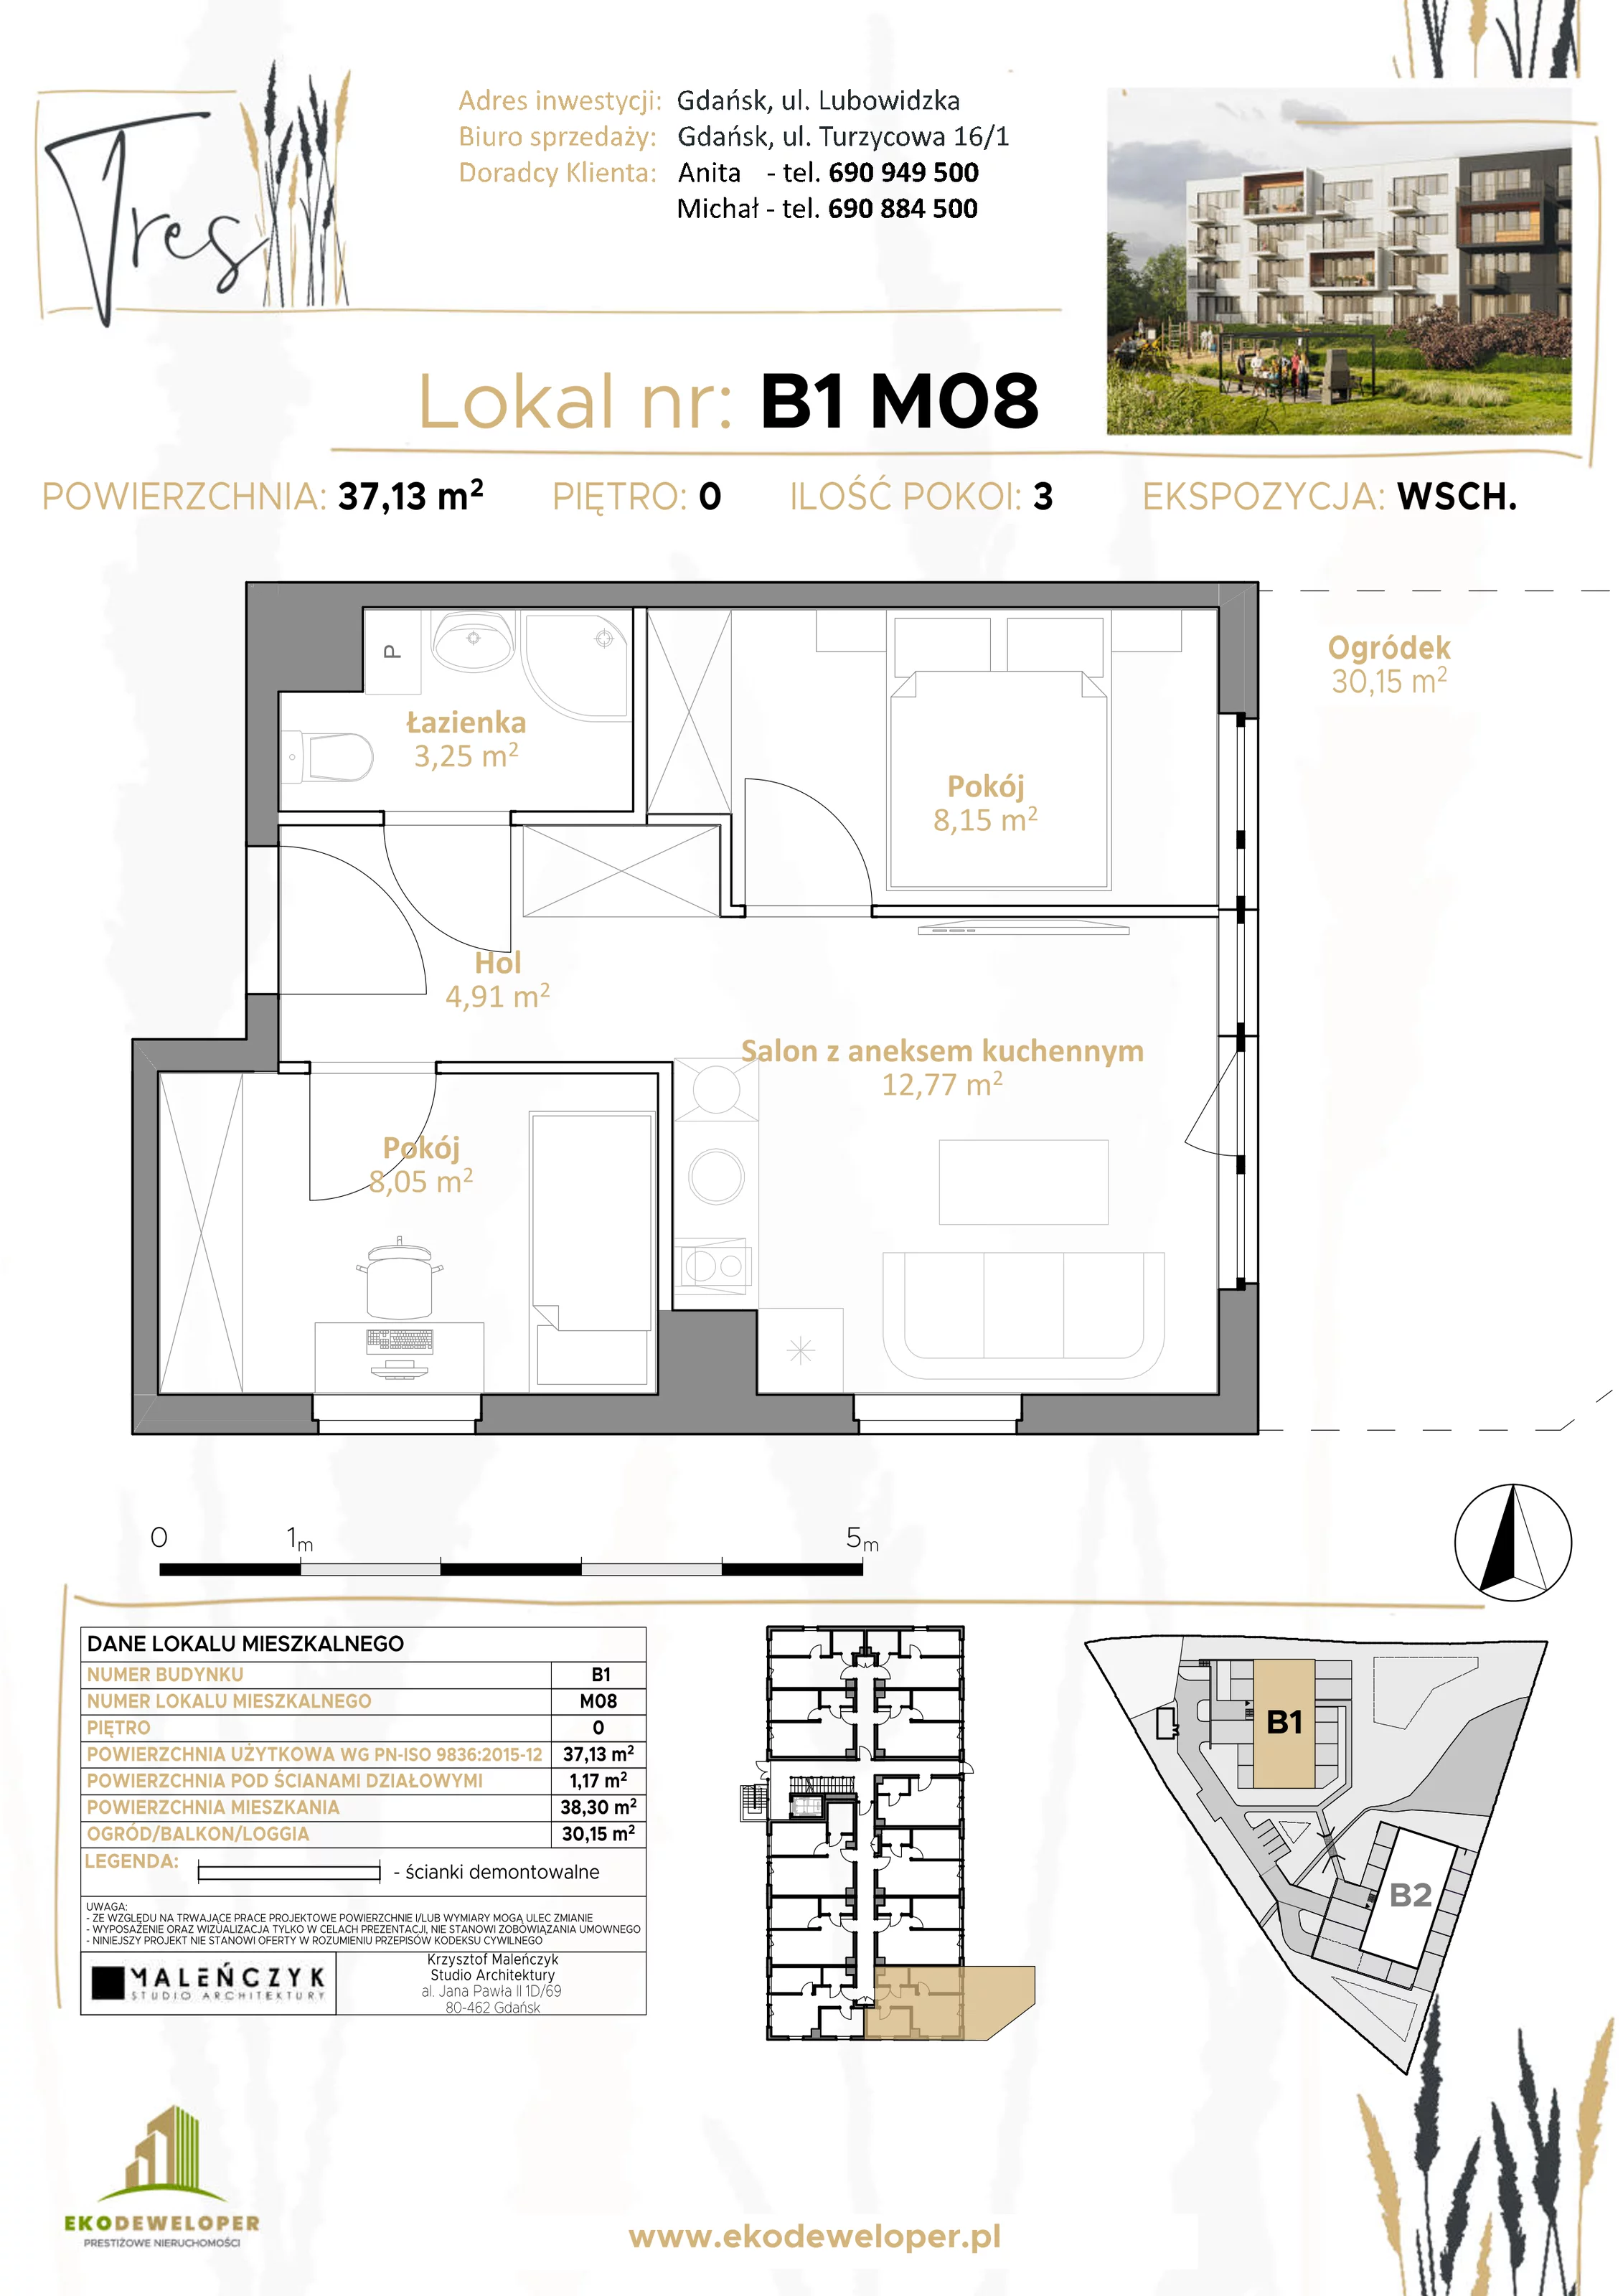 Mieszkanie 37,13 m², parter, oferta nr B1.M08, Tres, Gdańsk, Jasień, ul. Lubowidzka